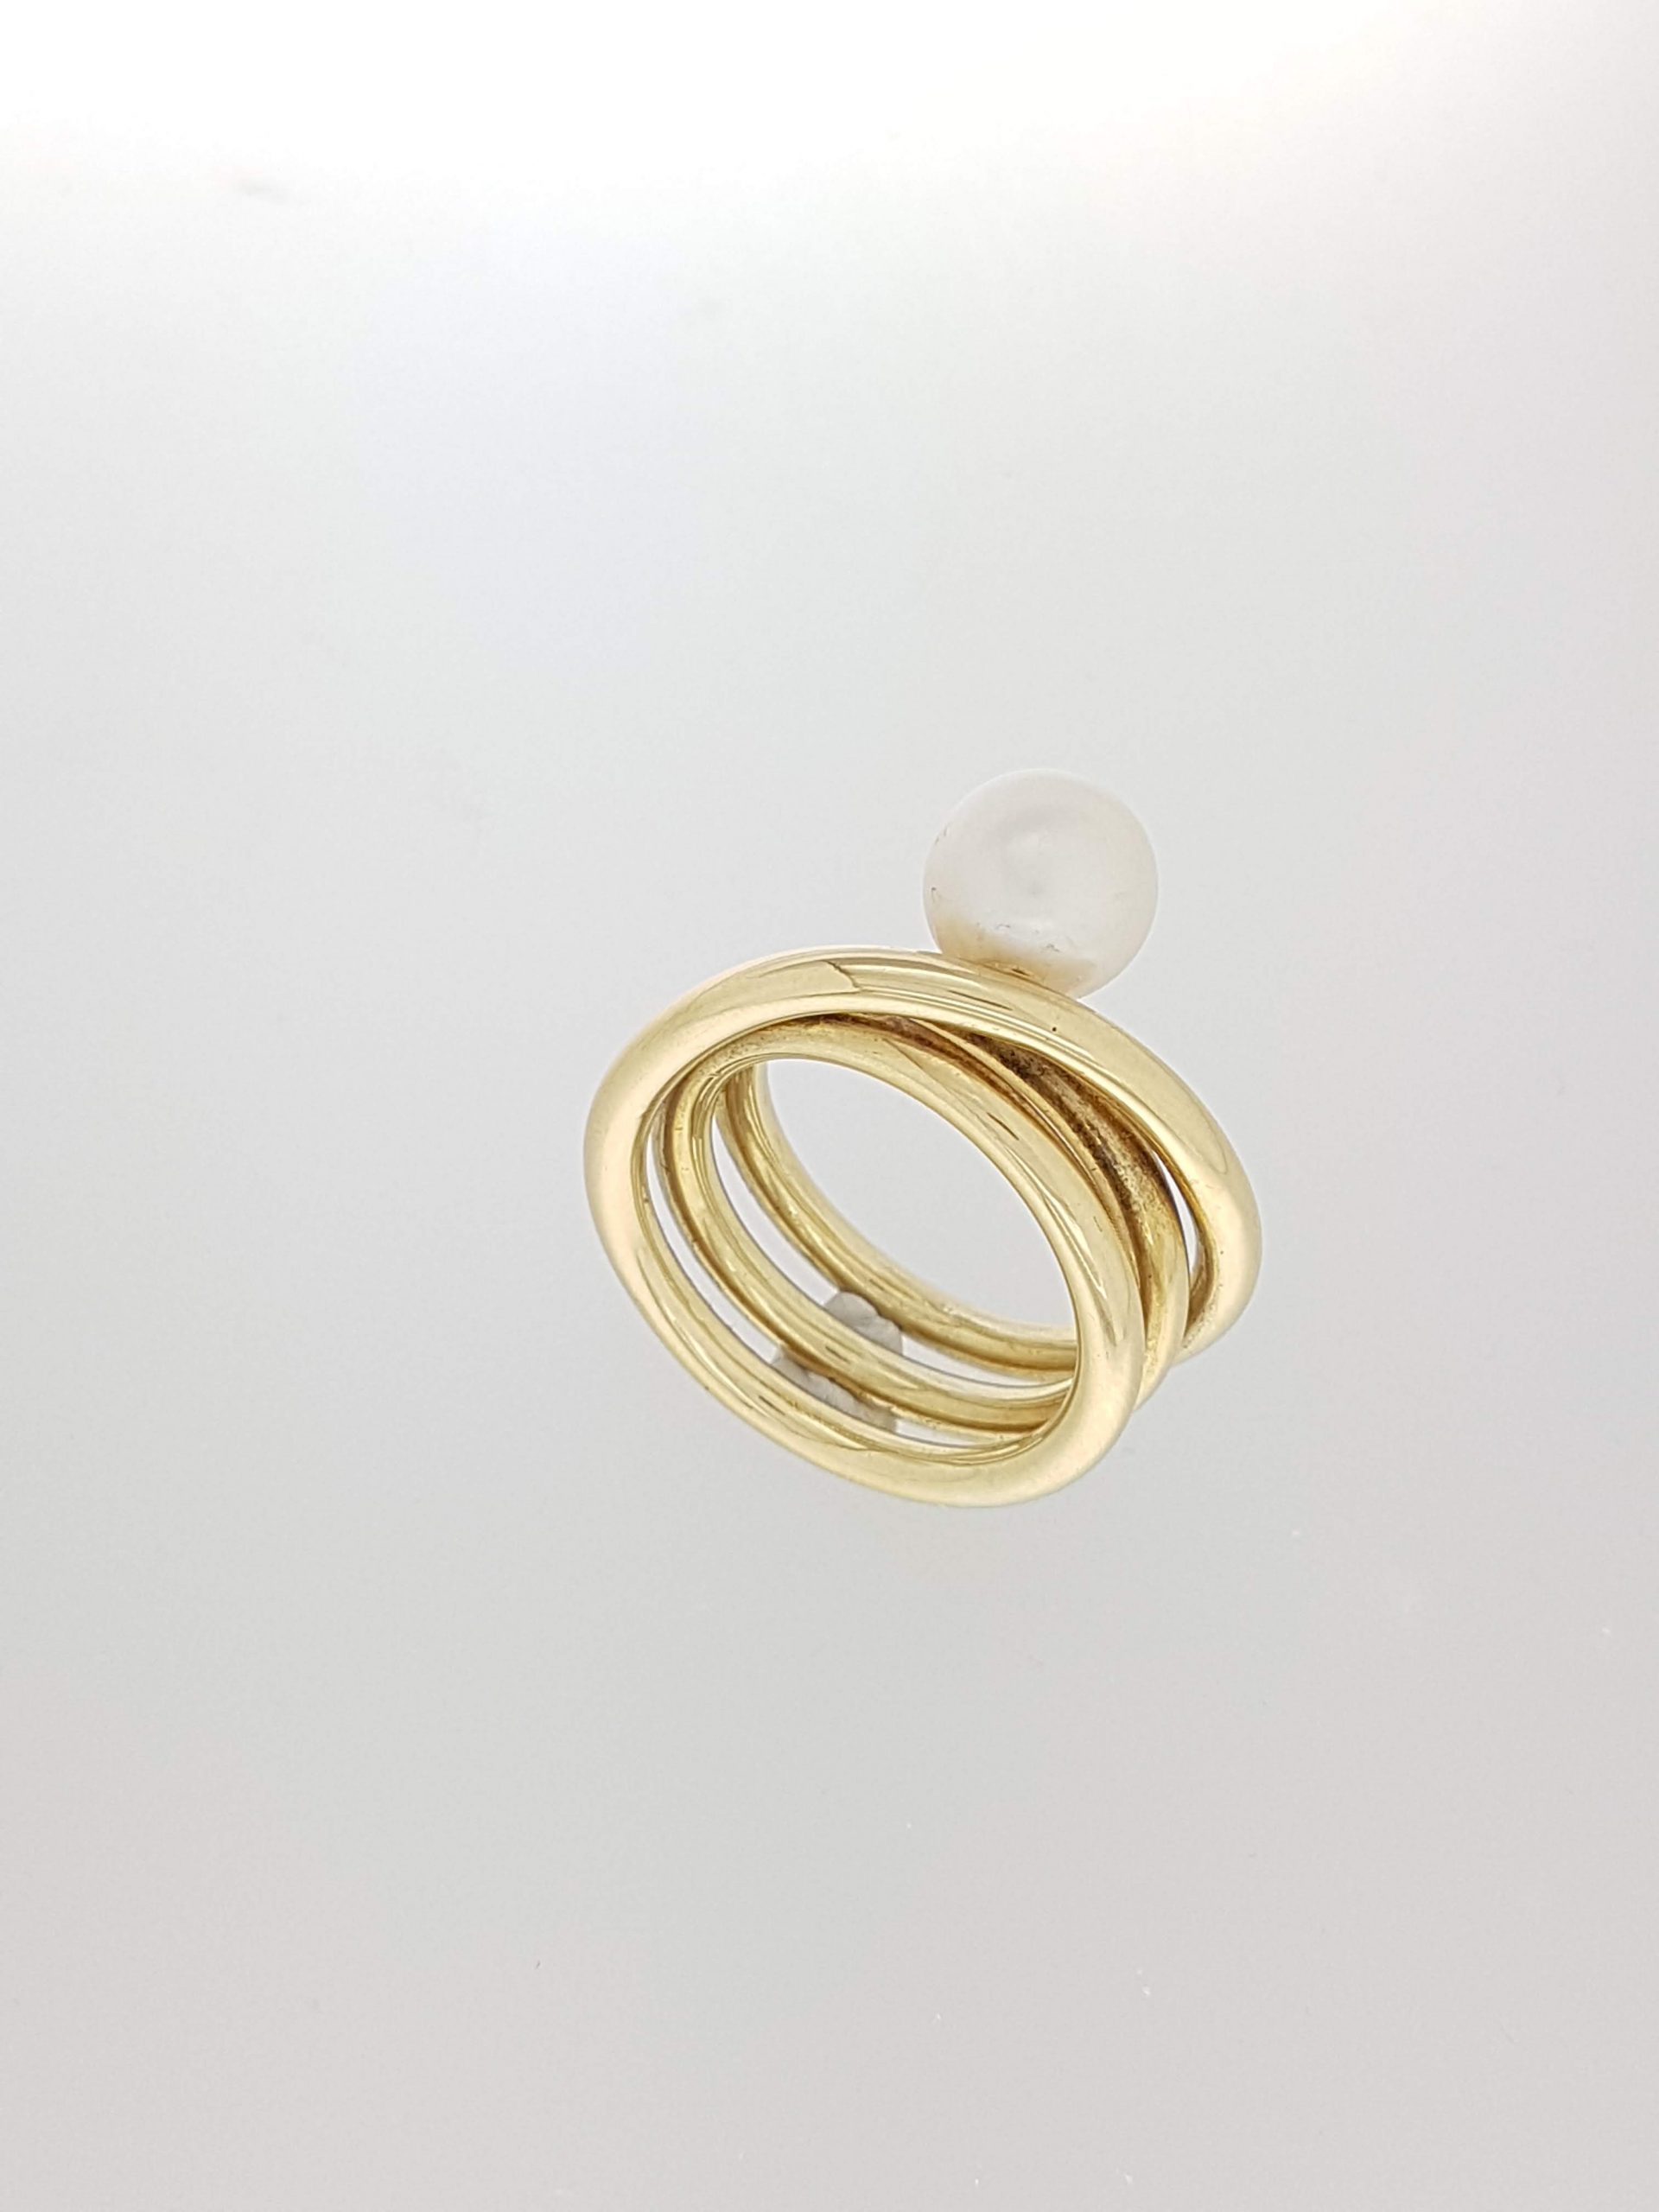 Proberen Mijnenveld Laboratorium Geelgouden ring met parel. #11232 | Goudsmederij/Juwelier Arnold van  Dodewaard